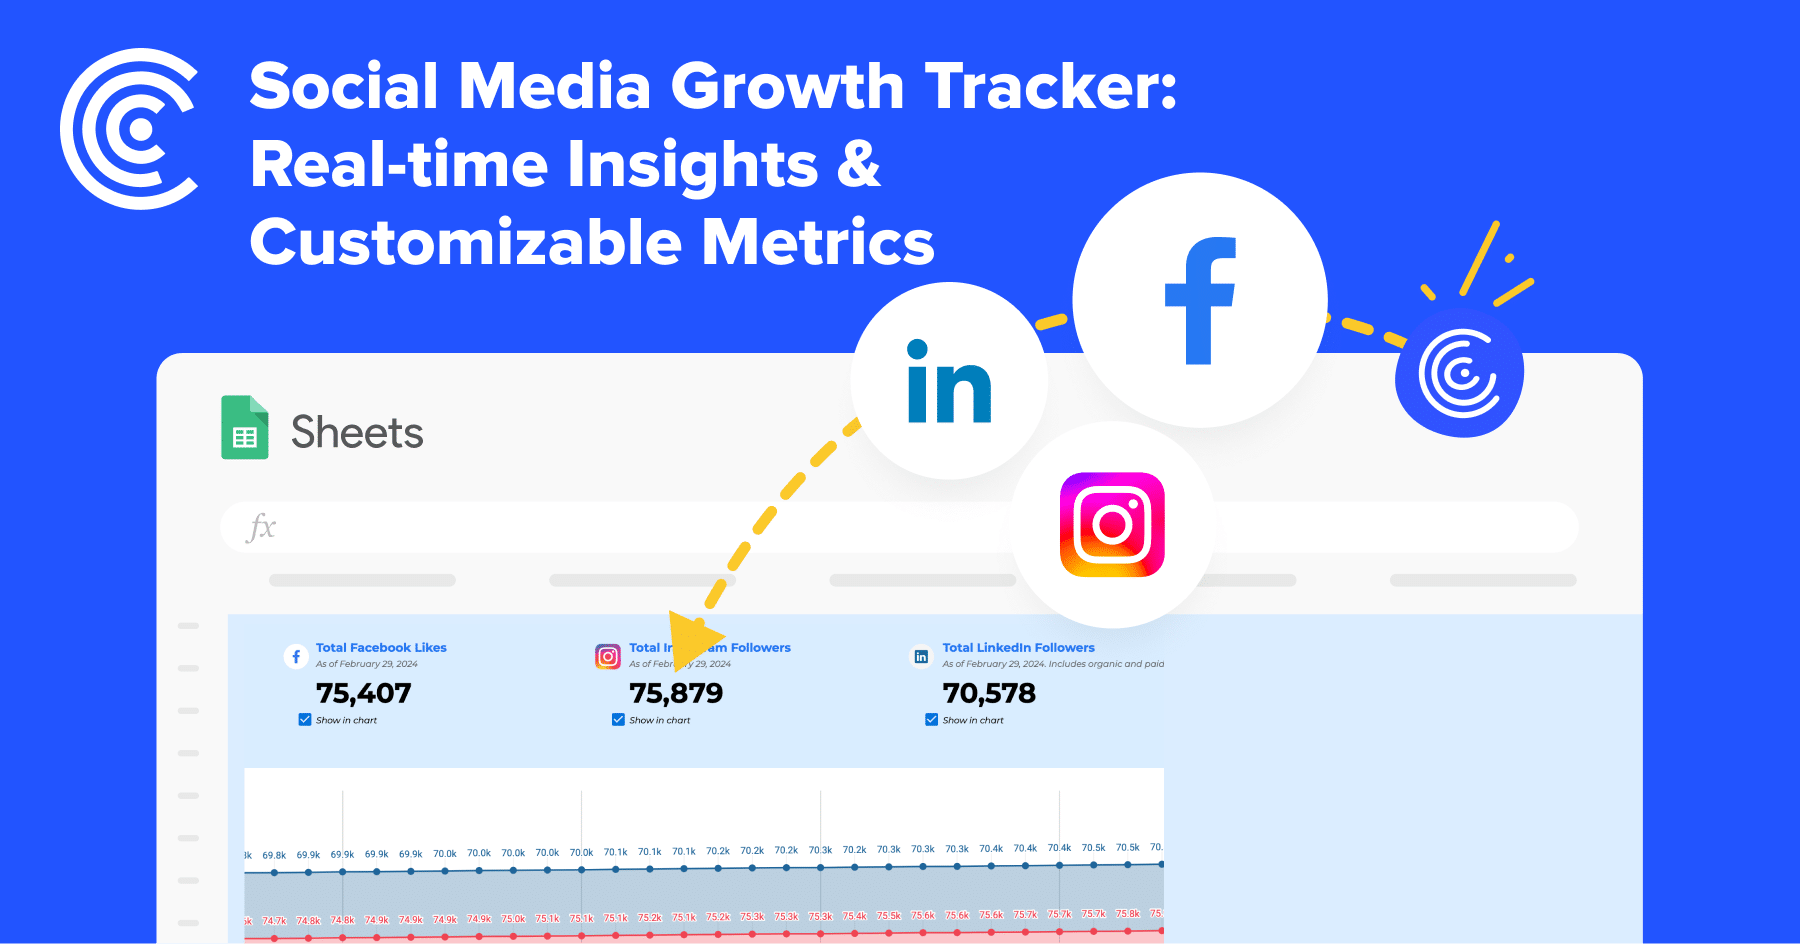 Social Media Growth Tracker Report